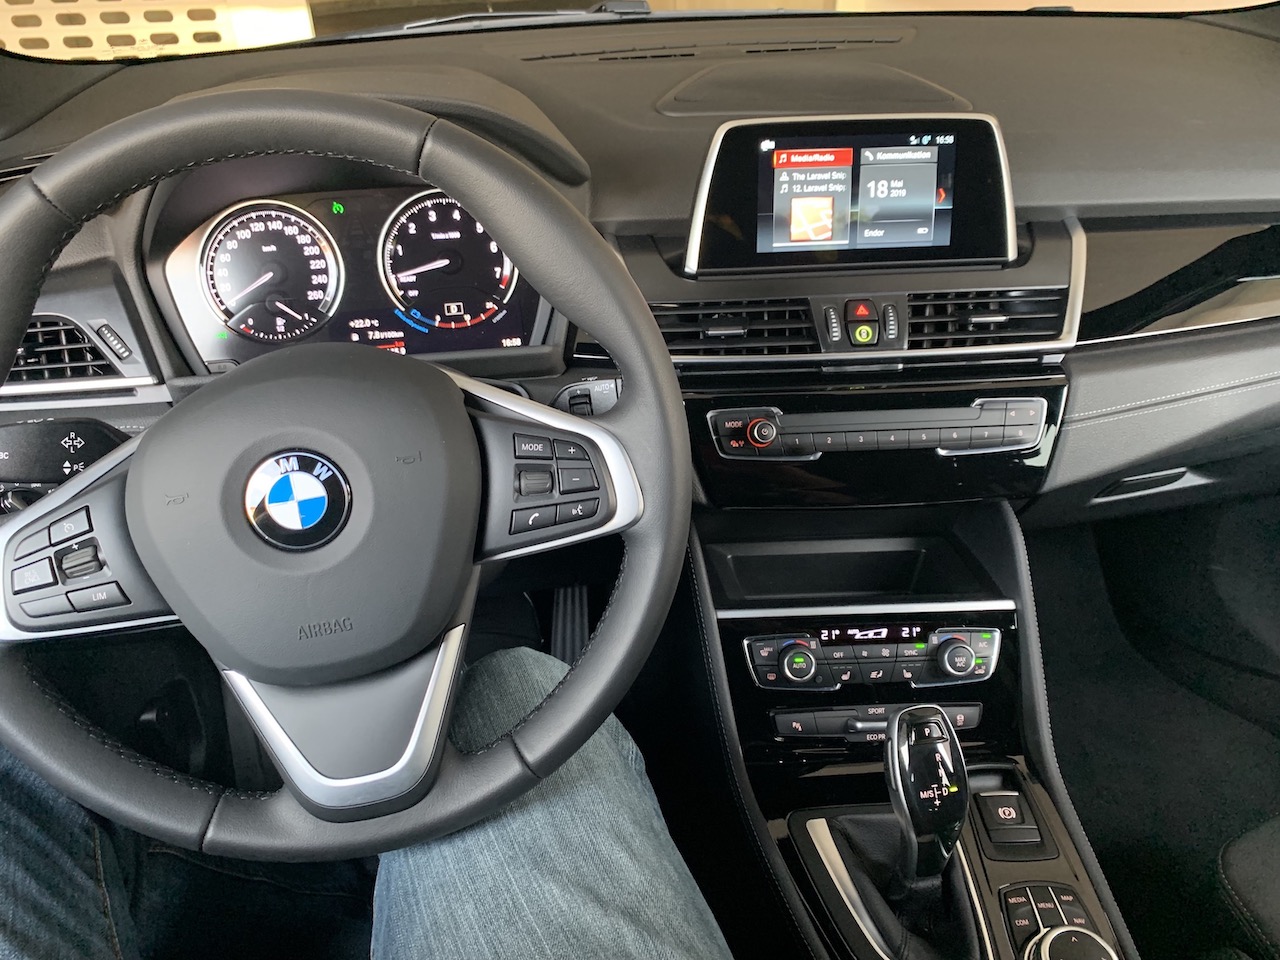 Update des Winterkleides - 2er BMW Active Tourer Forum & 2er BMW